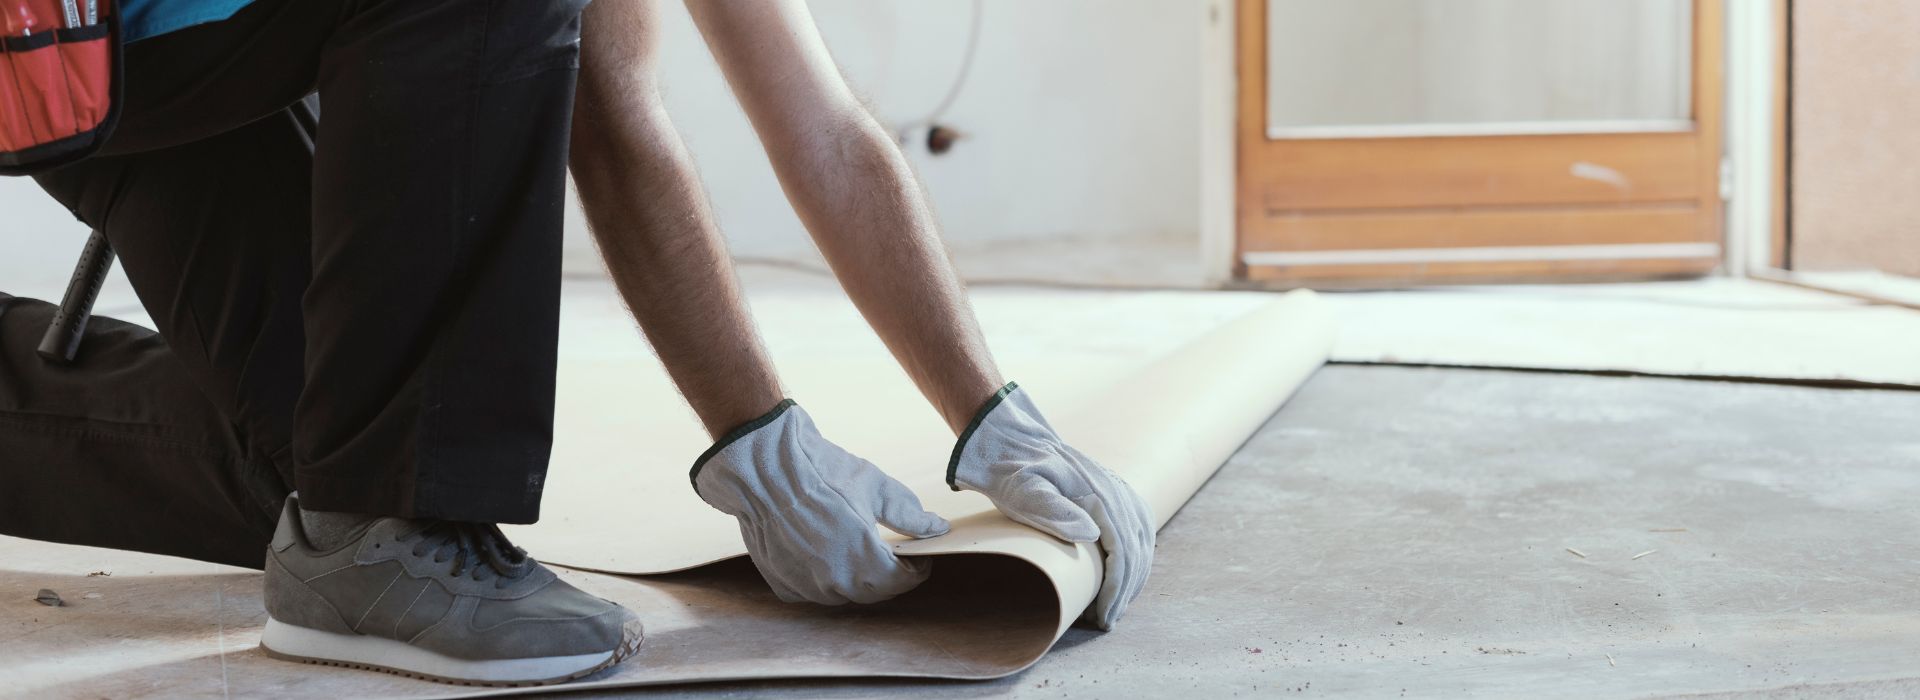 Removing Linoleum Flooring